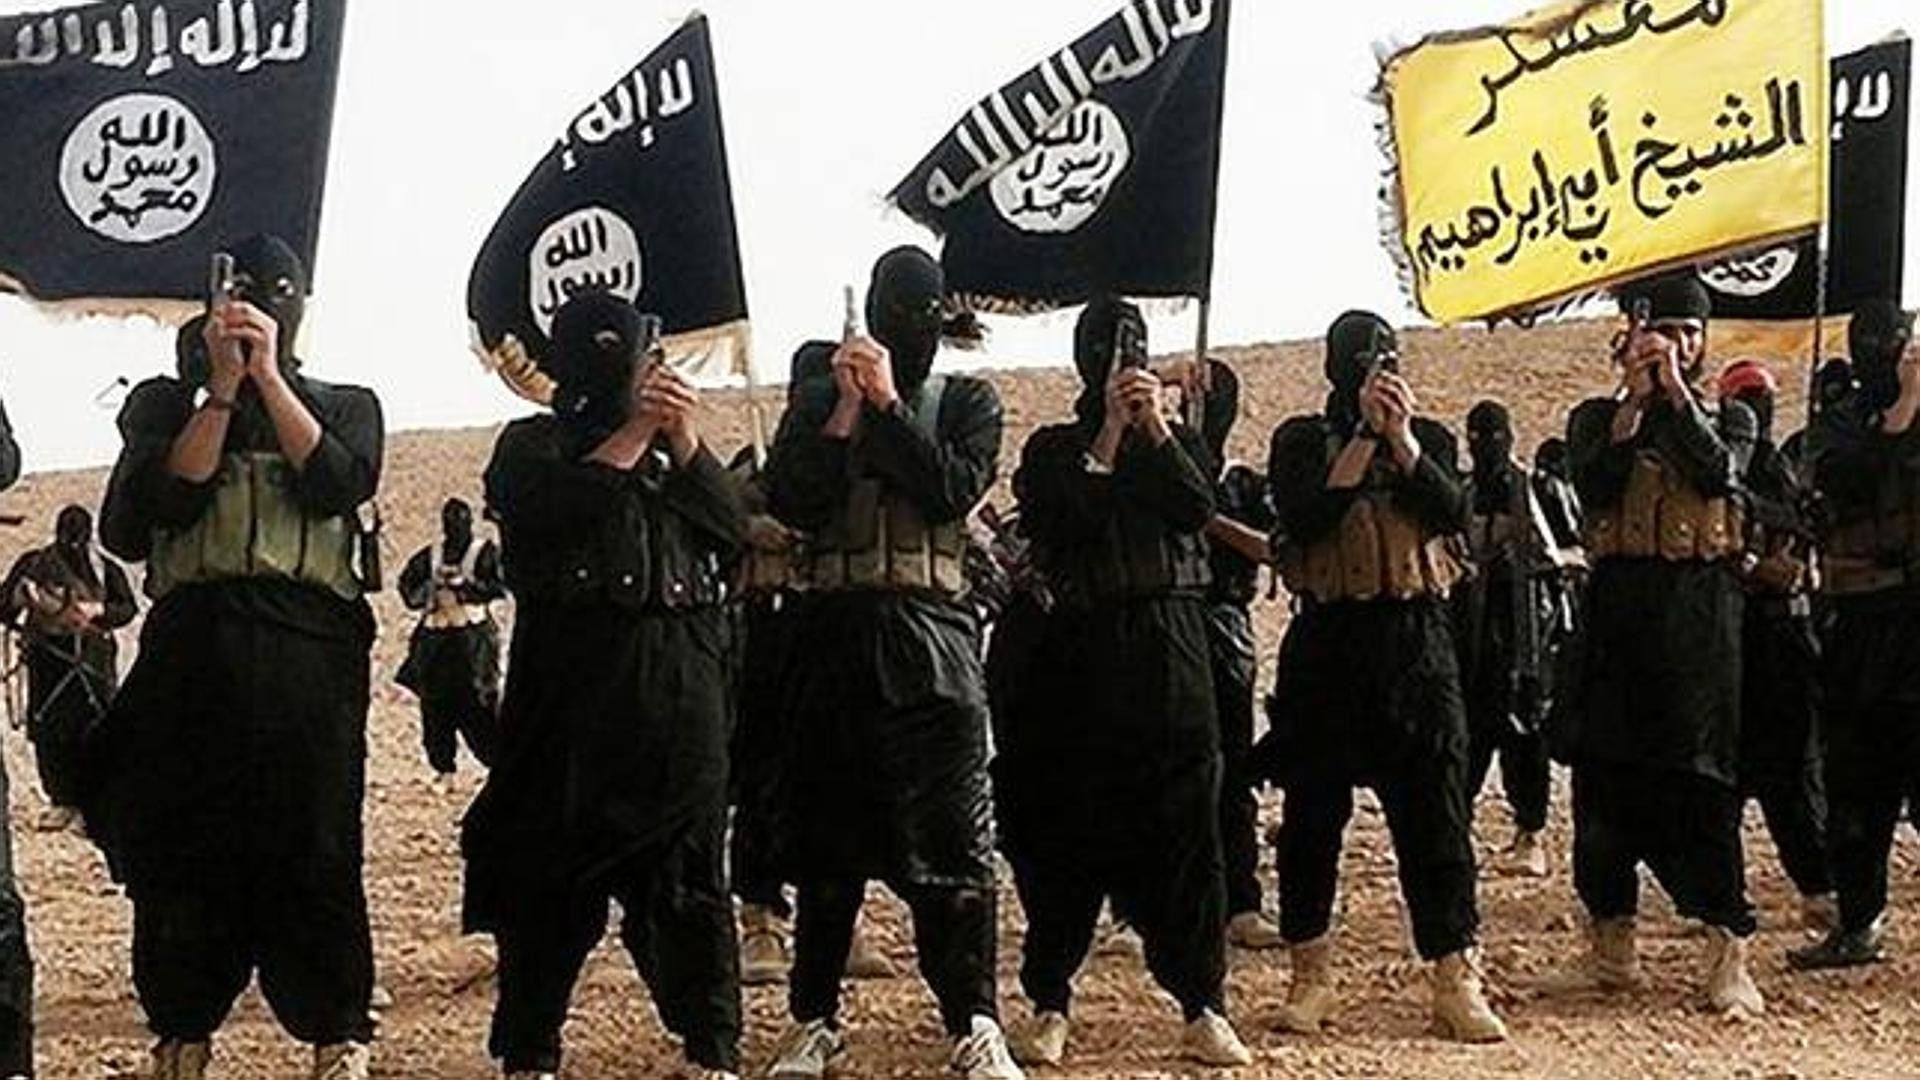 Ανάληψη ευθύνης από τον ISIS: Εμείς αιματοκυλήσαμε το Παρίσι